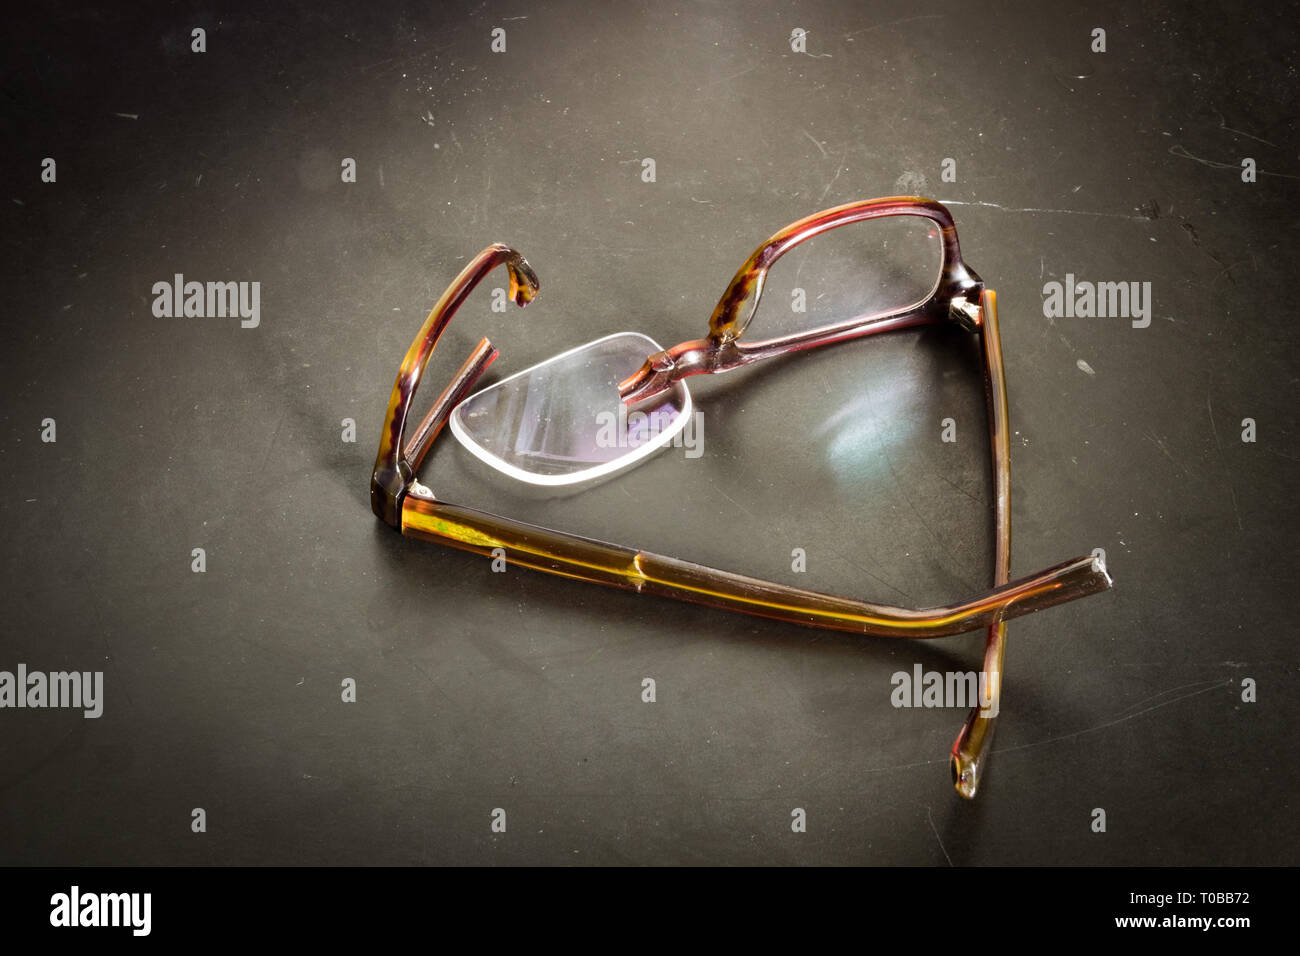 Broken eyeglasses on desk or ground Stock Photo